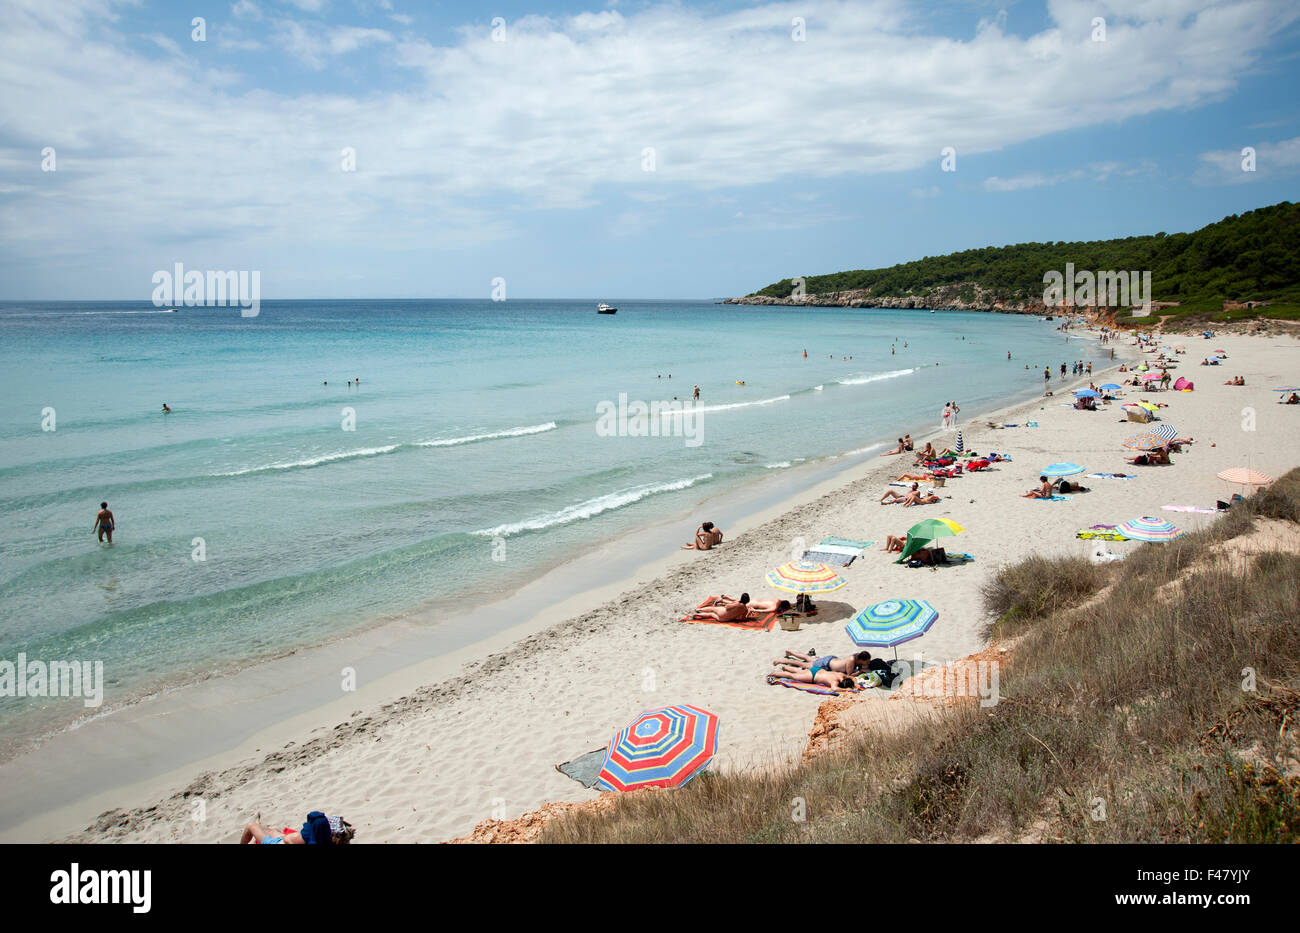 Les touristes se faire bronzer et nager à la belle plage de sable de Binigaus sur l'île de Minorque espagne Banque D'Images